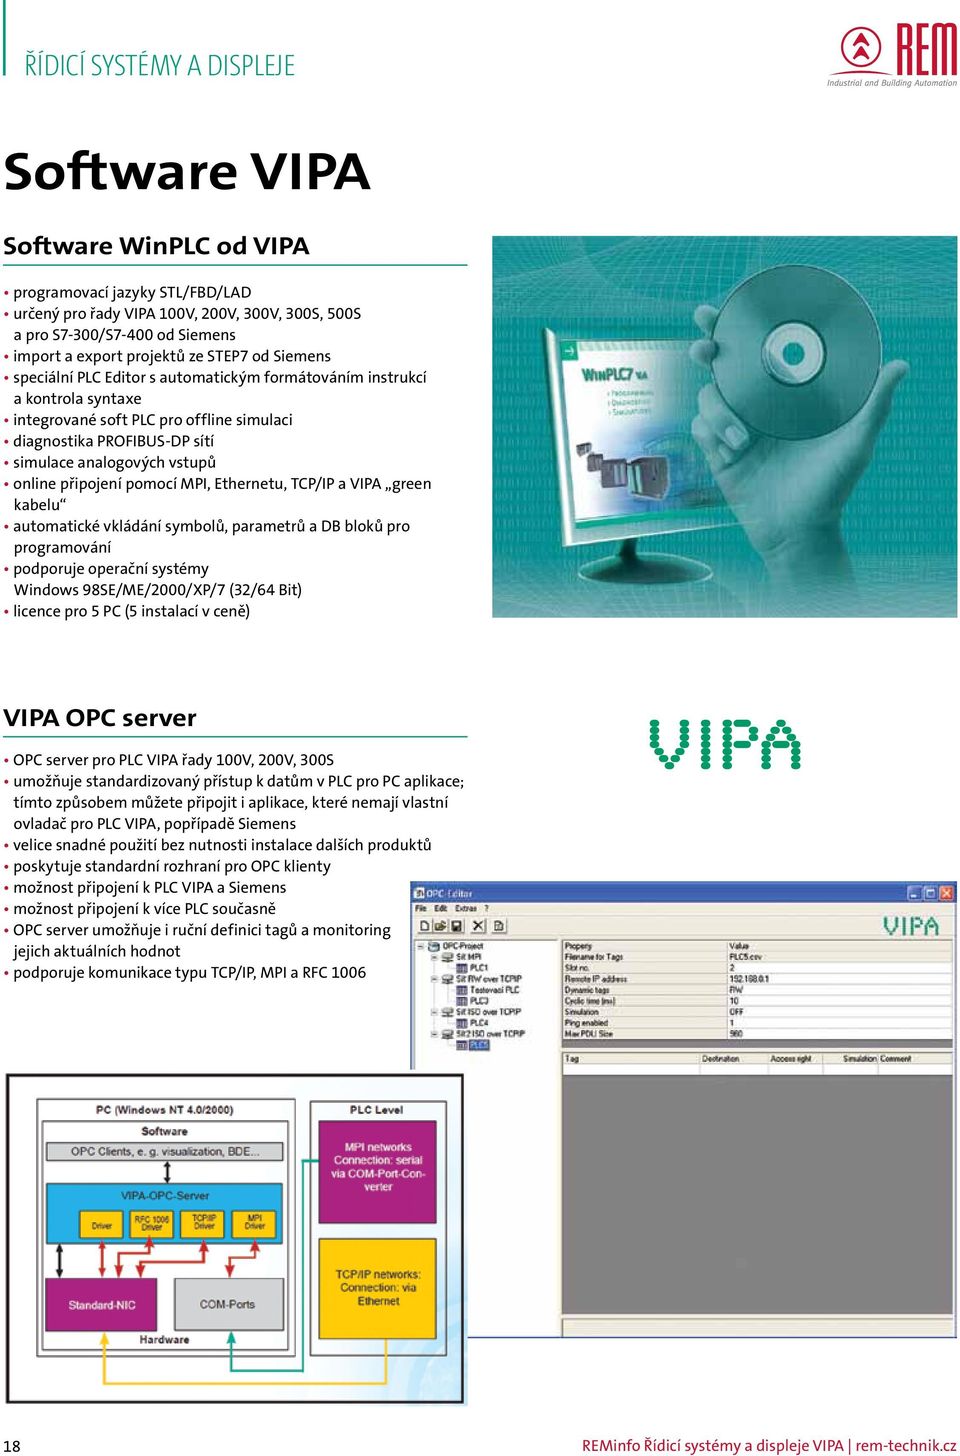 pomocí MPI, Ethernetu, TCP/IP a VIPA green kabelu automatické vkládání symbolů, parametrů a DB bloků pro programování podporuje operační systémy Windows 98SE/ME/2000/XP/7 (32/64 Bit) licence pro 5 PC